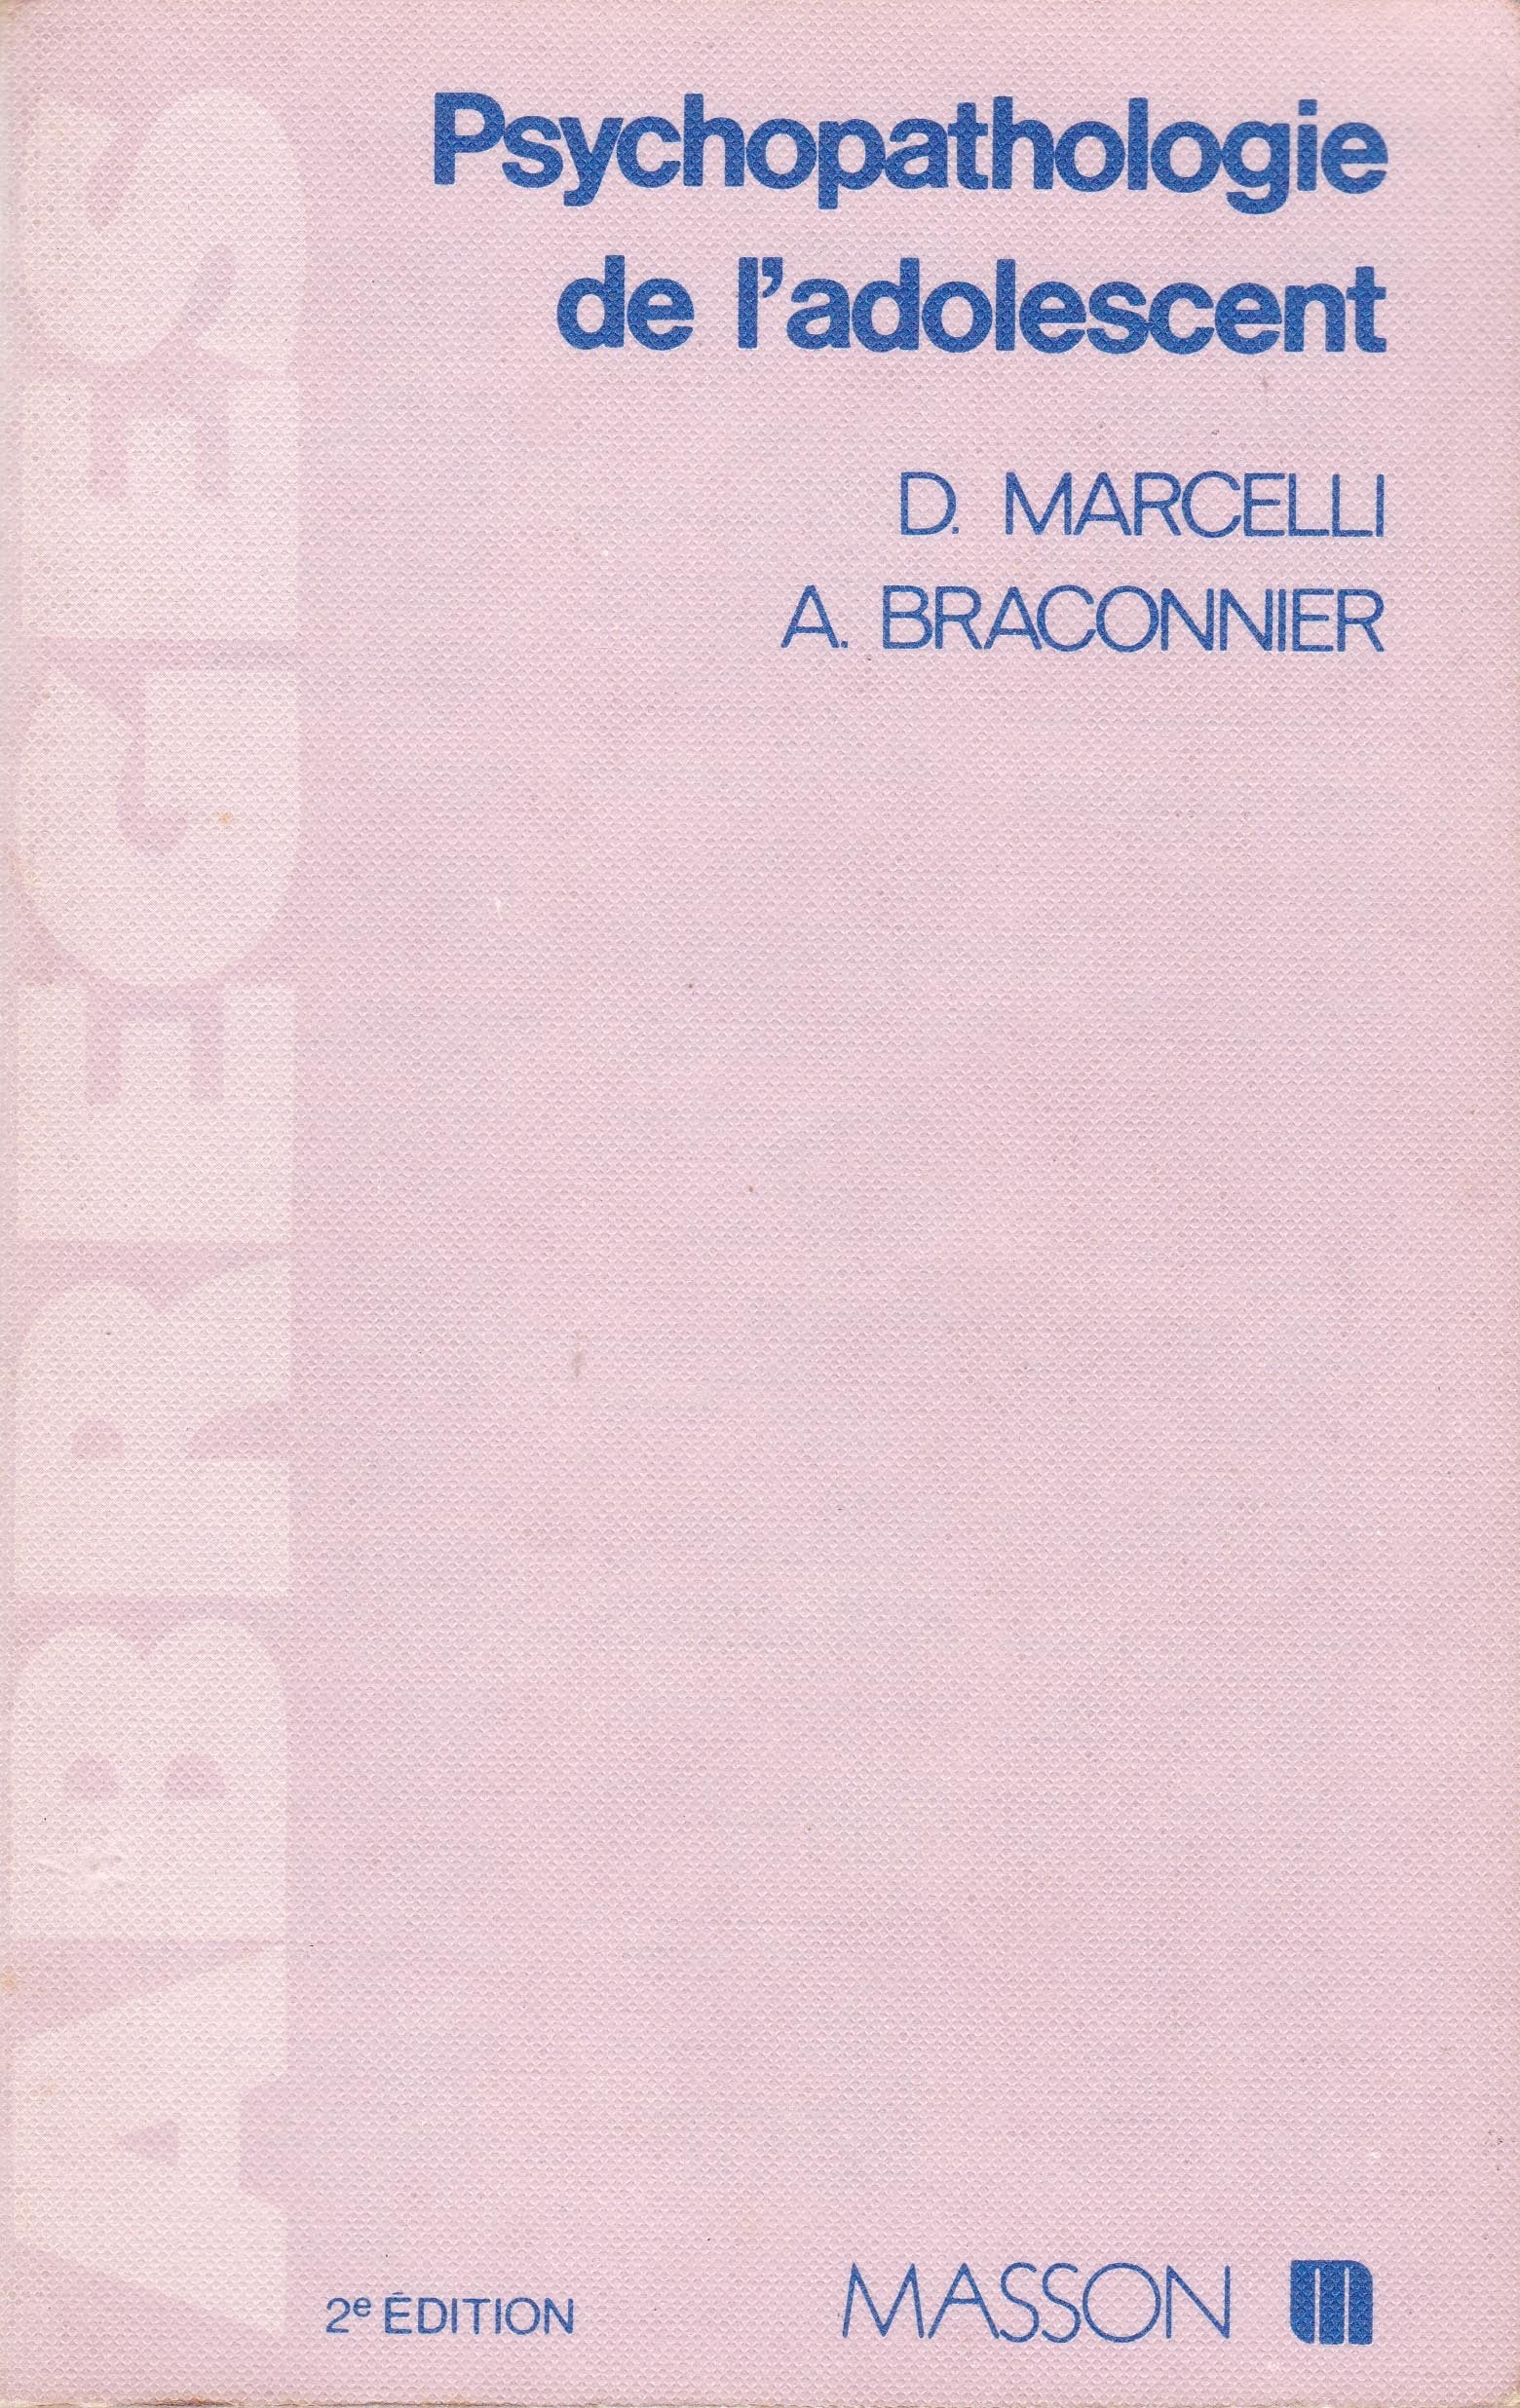 Psychopathologie de l'adolescent - D. Marcelli